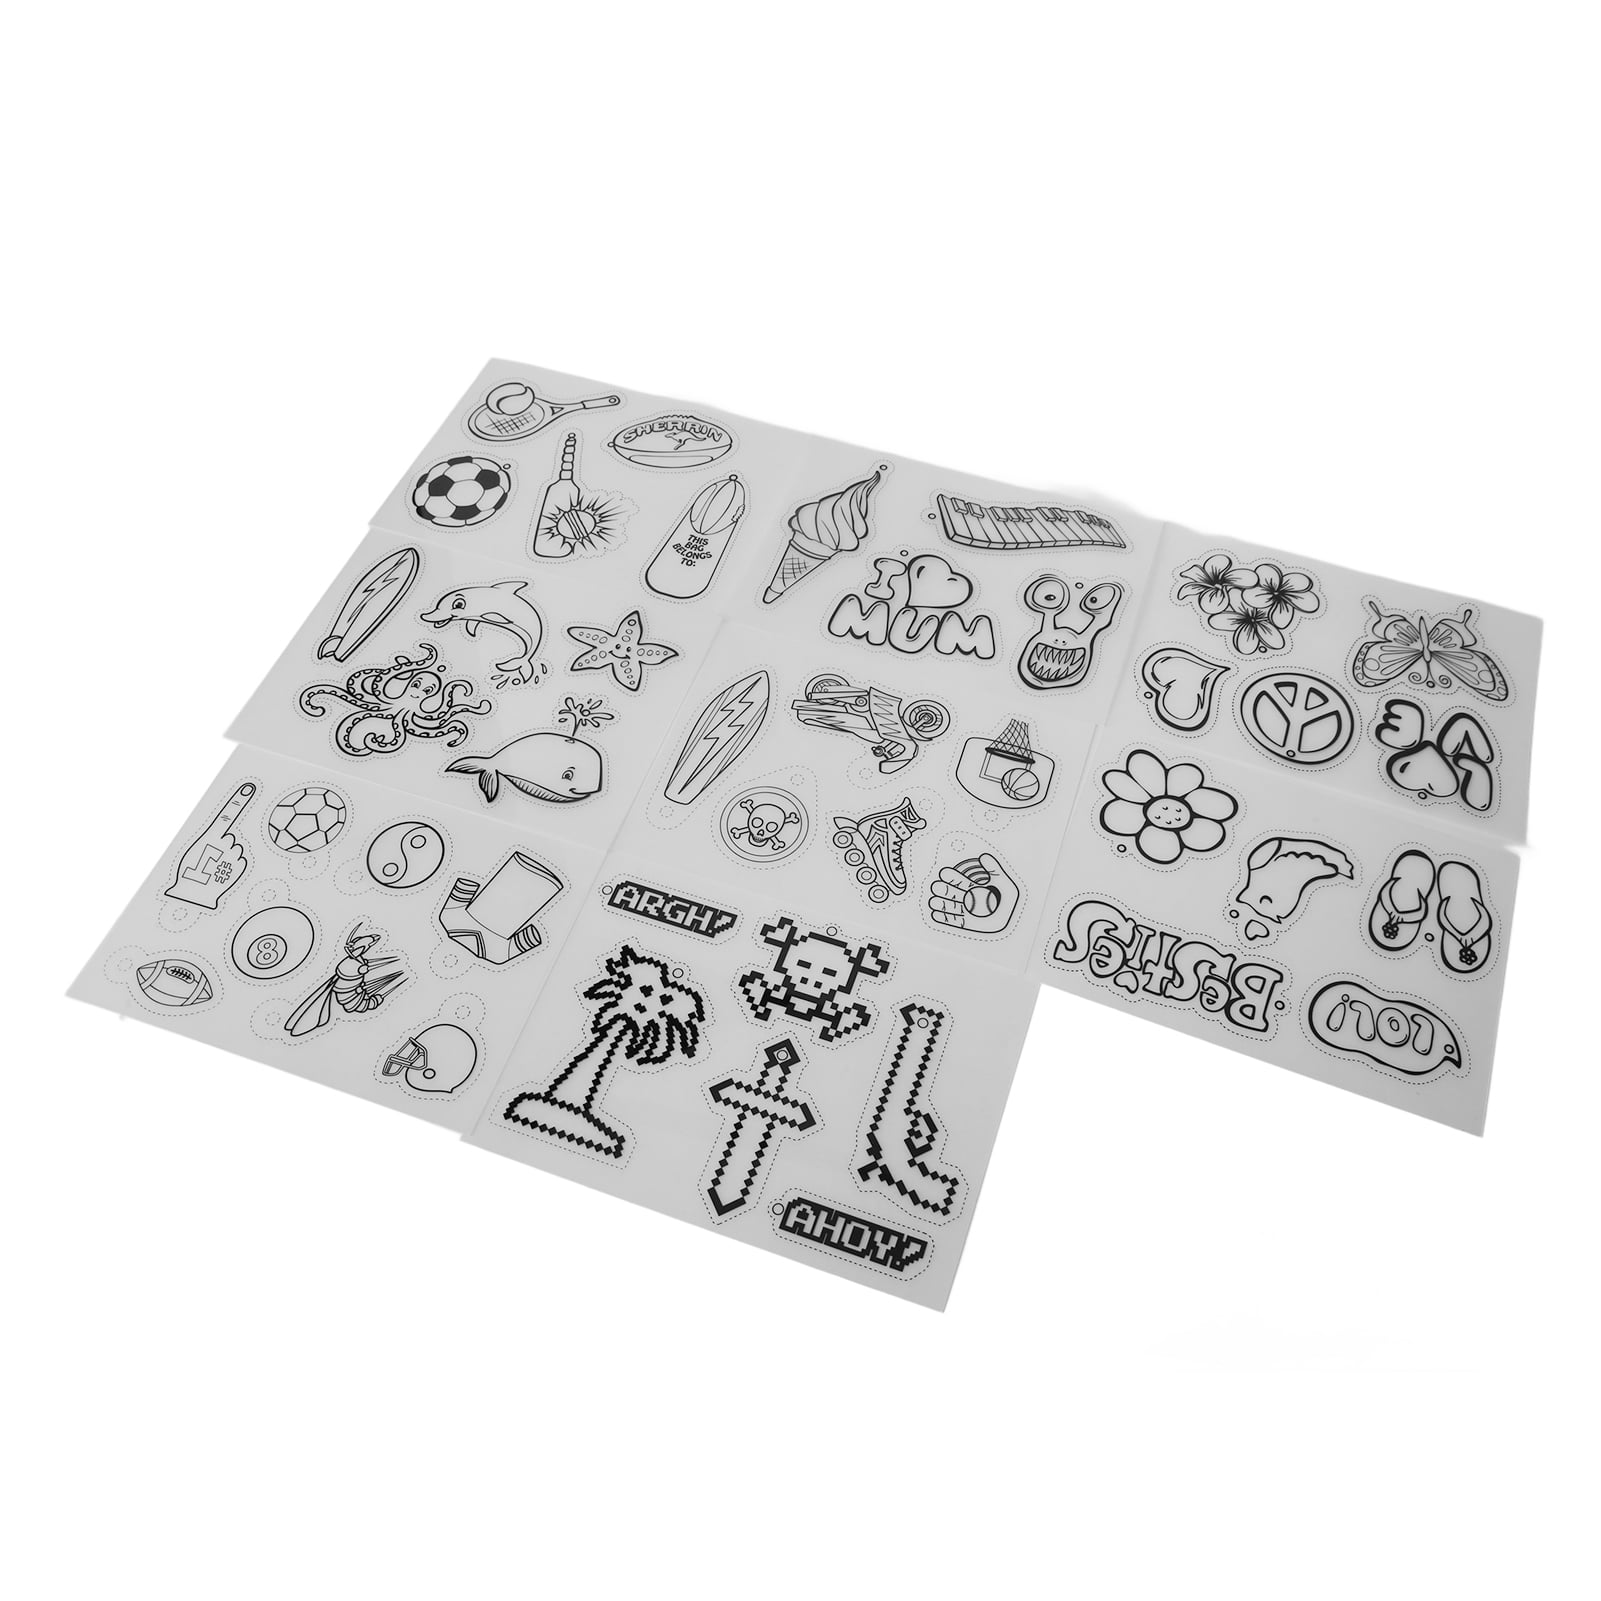 50pcs Shrinky Dink Sheets Printable Shrinky Plastic Sheets Shrinky Dink  Paper Kit with 100pcs Jump Rings 10pcs Key Rings 10pcs Earring Hooks 5pcs  Ball